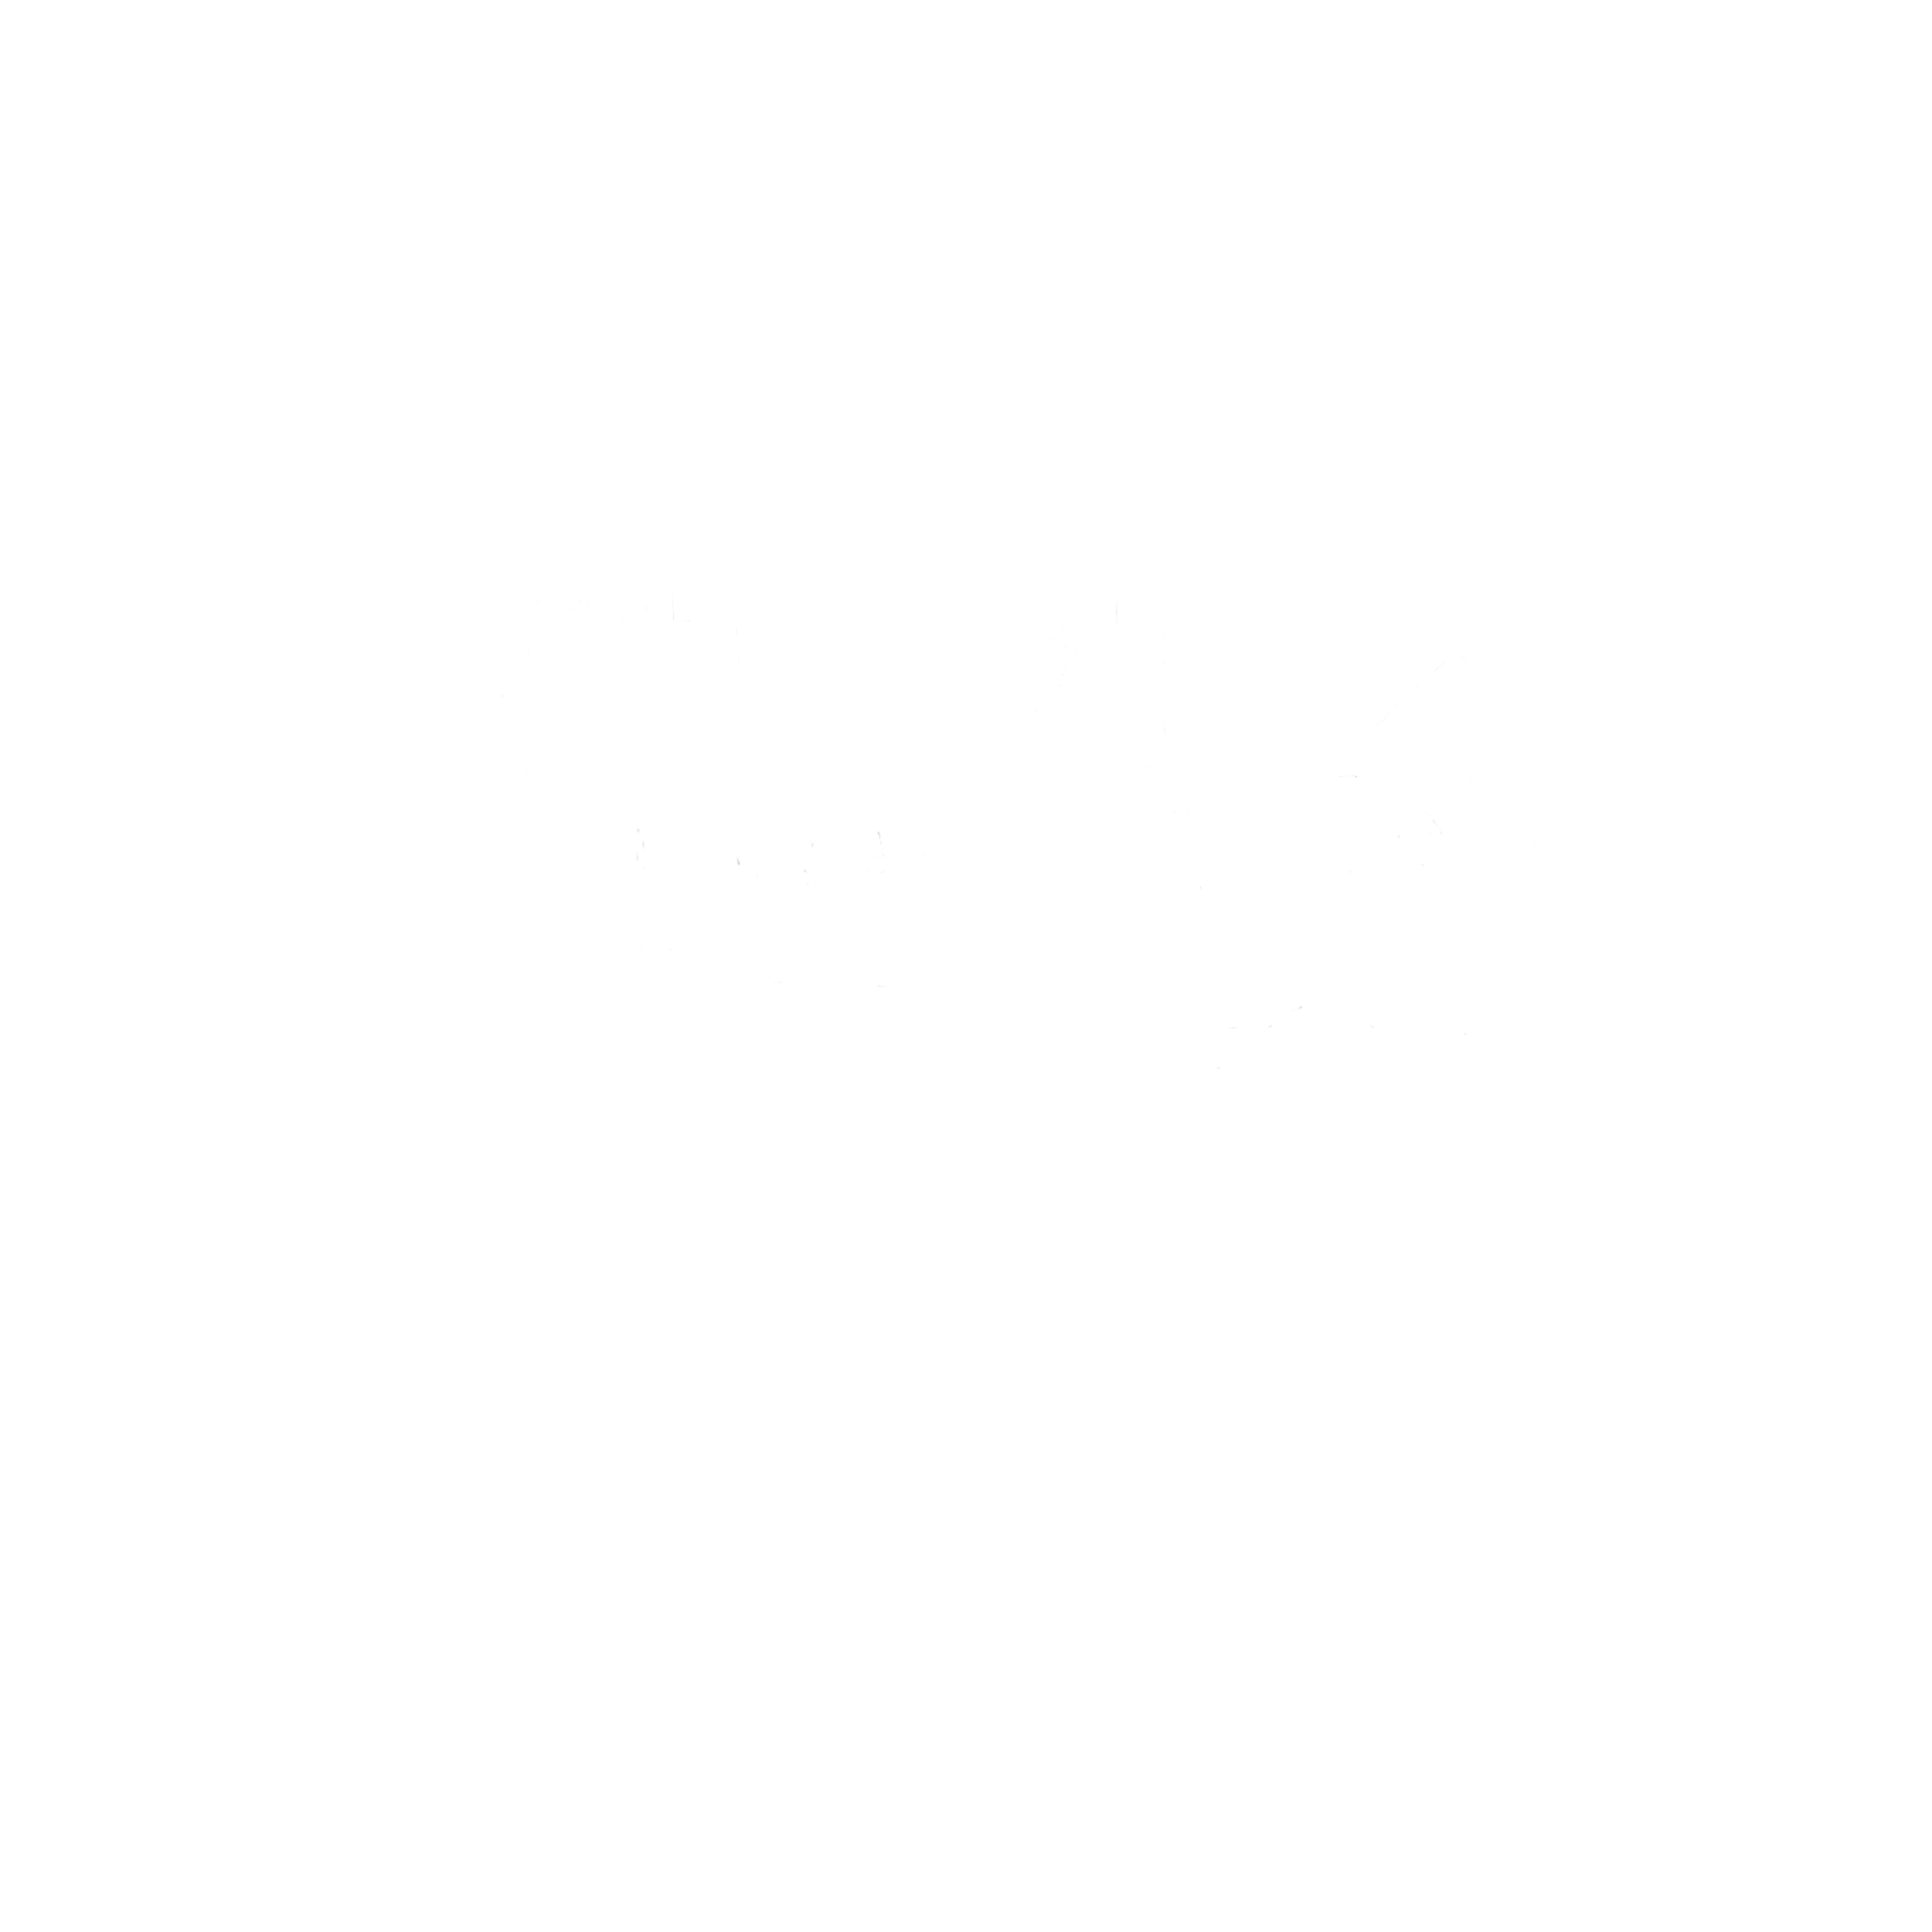 Varalja Akusztik Logo